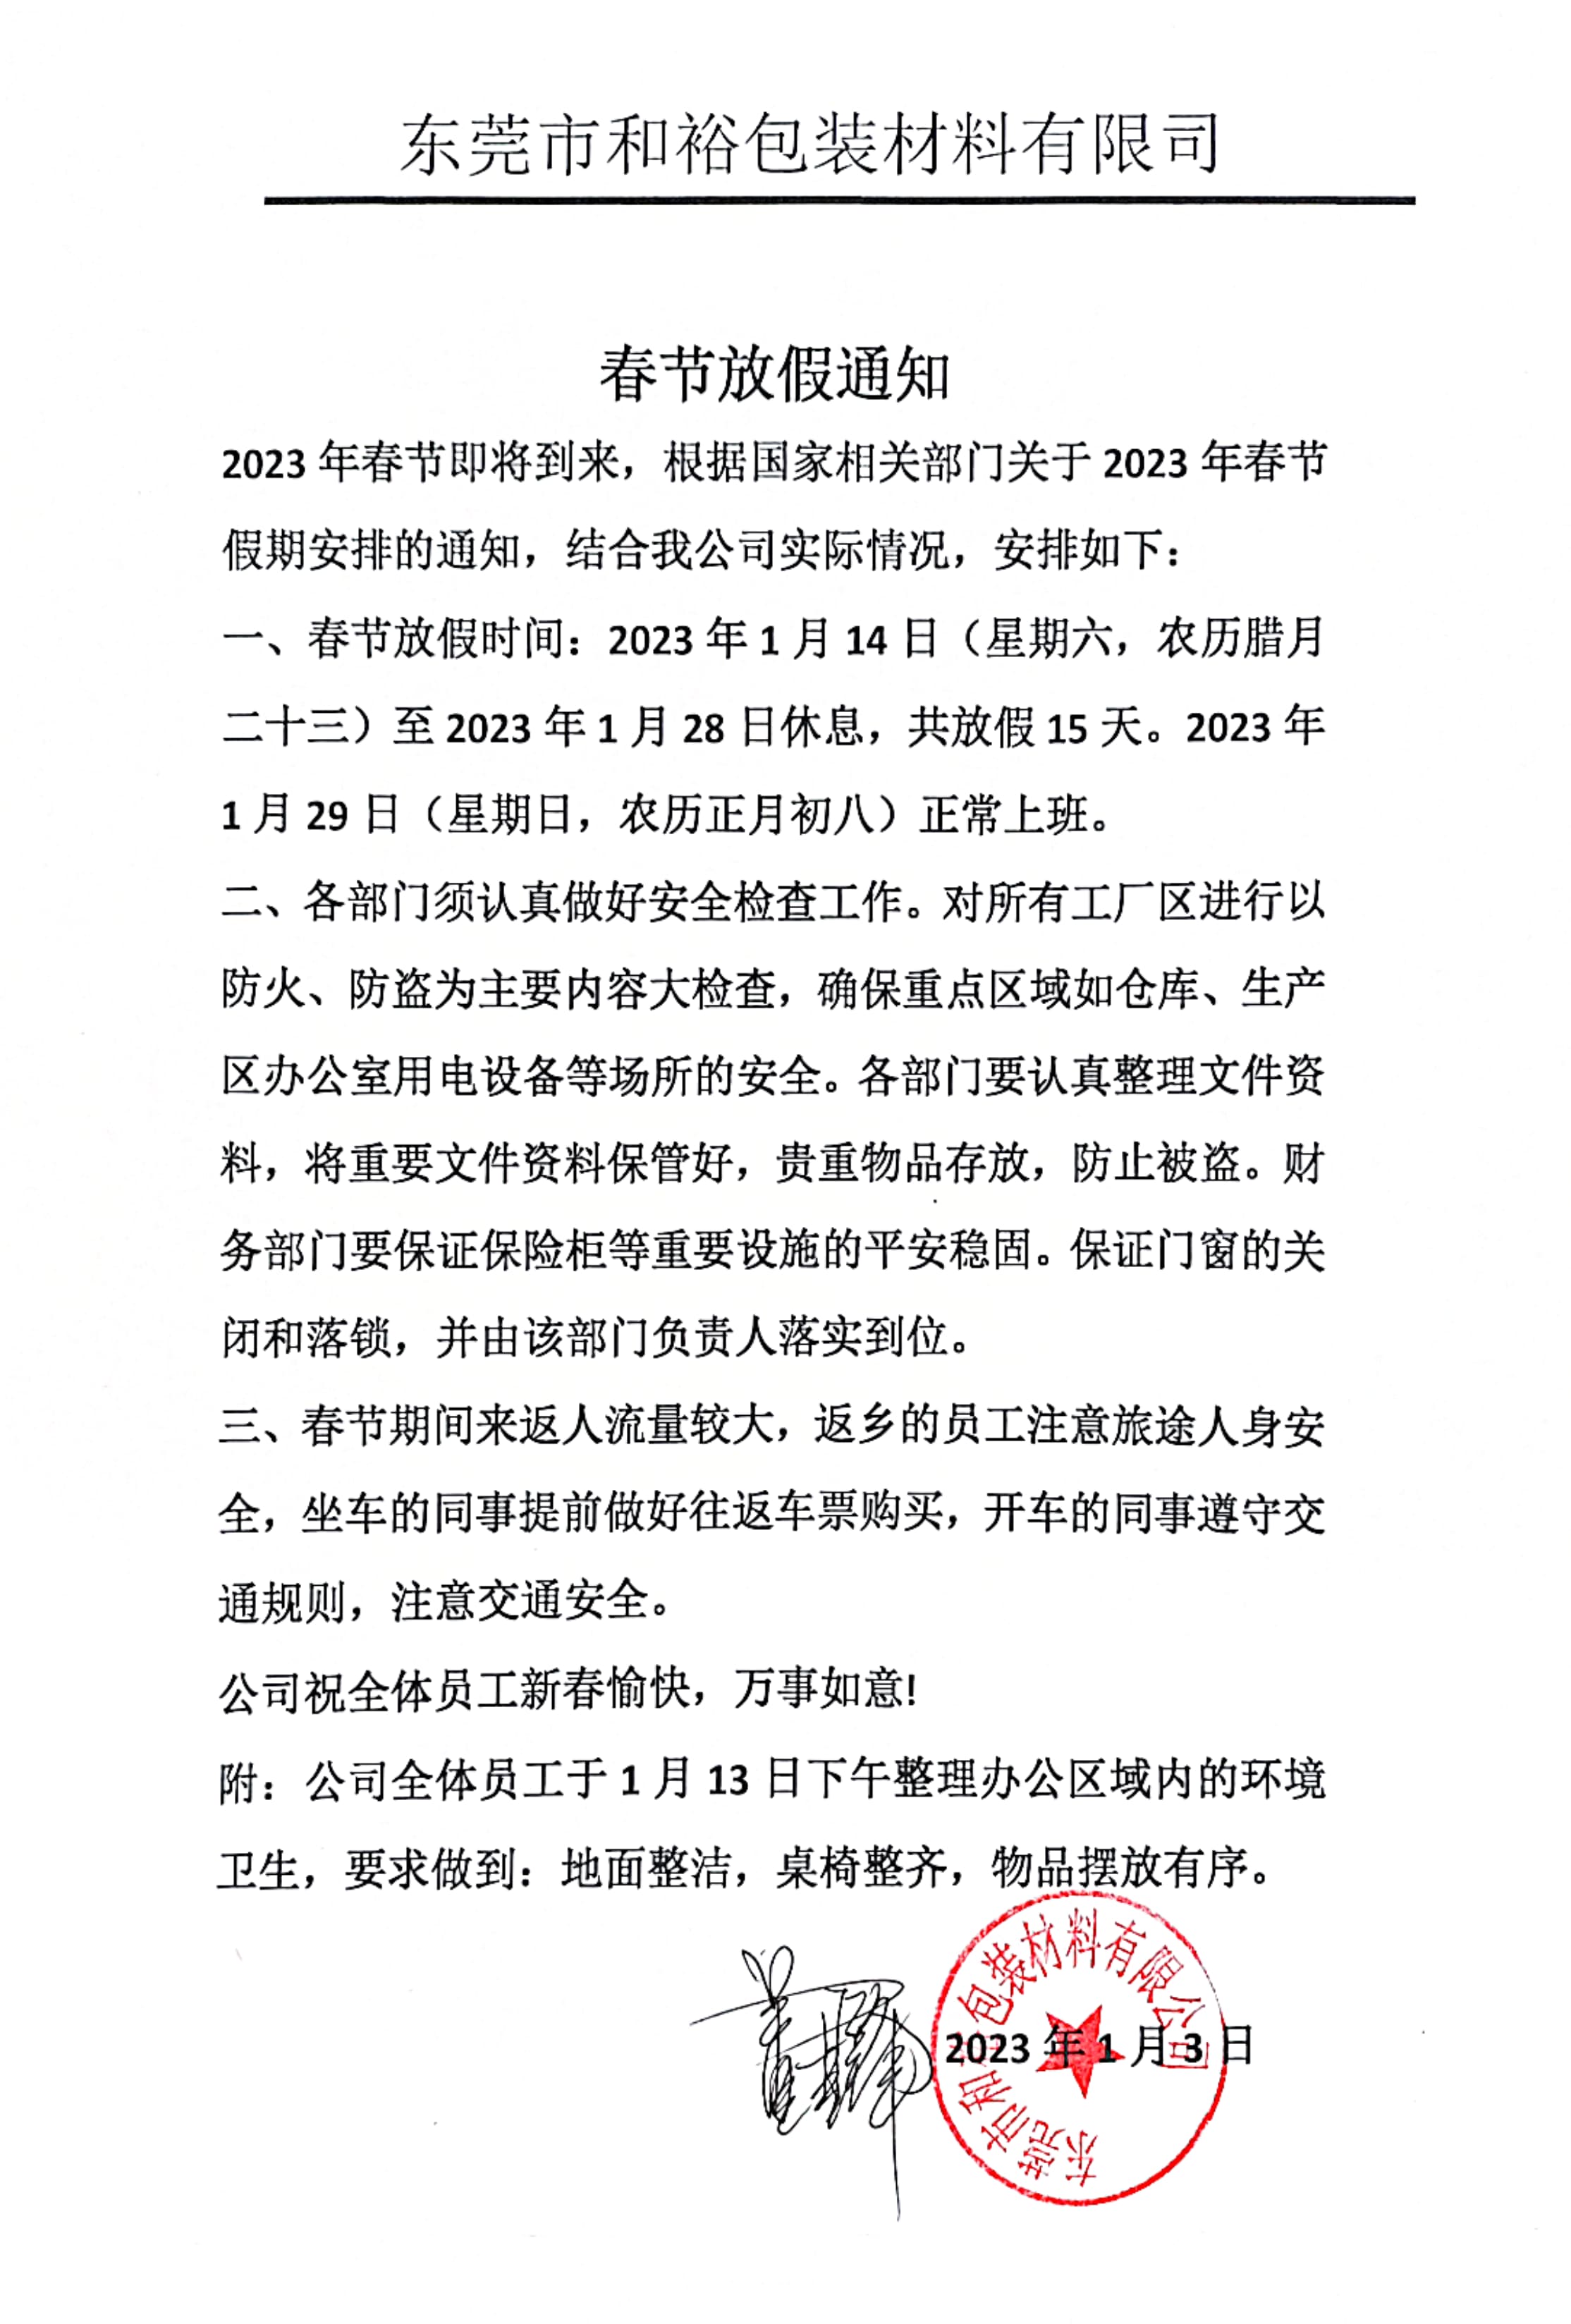 桂林市2023年和裕包装春节放假通知